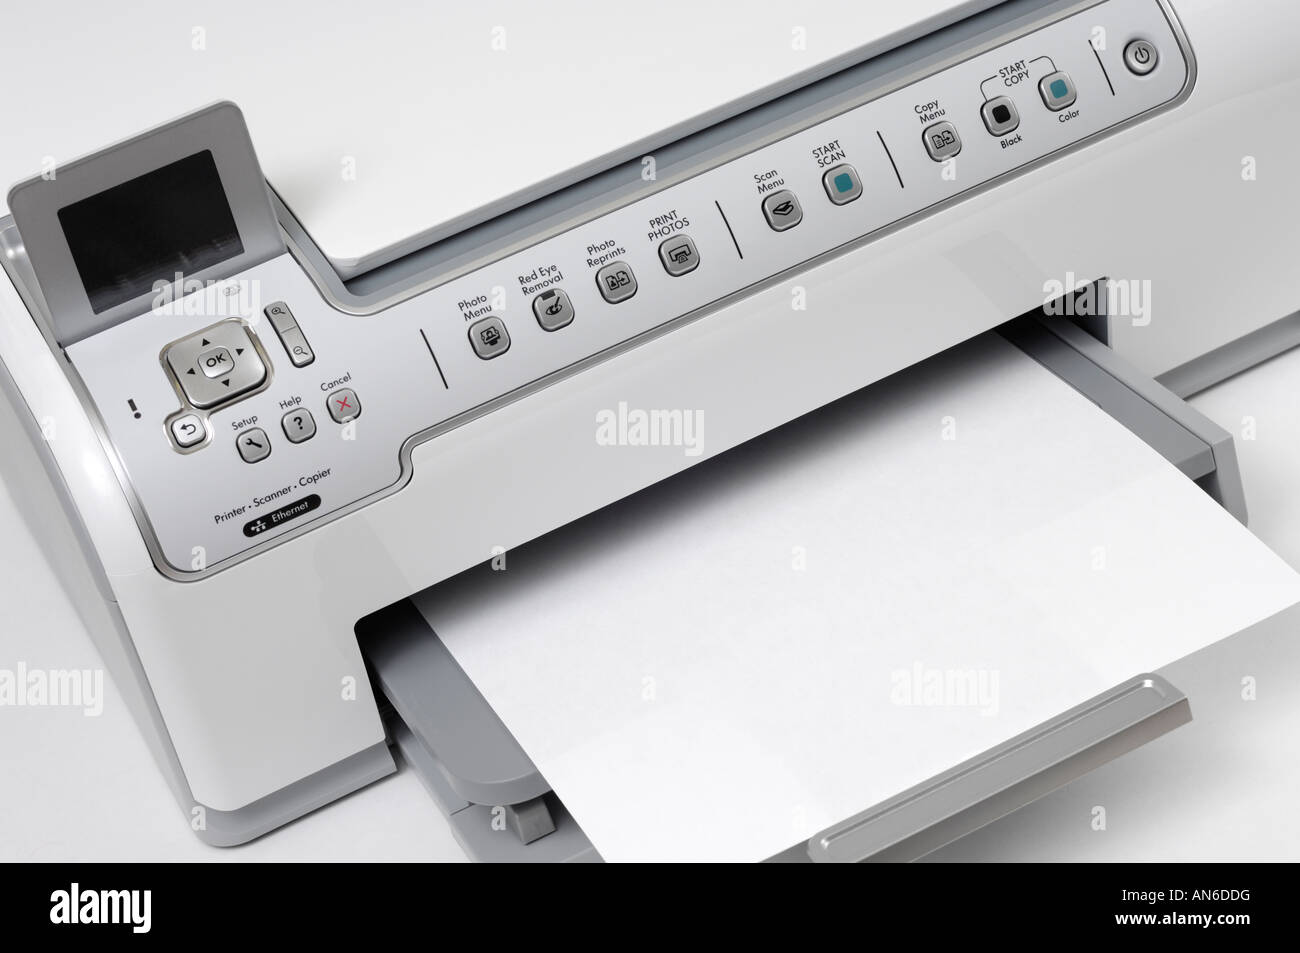 Tout-en-un jet d'moderne Logiciel HP Photosmart C6280 imprimante photo copieur scanner Ethernet Banque D'Images